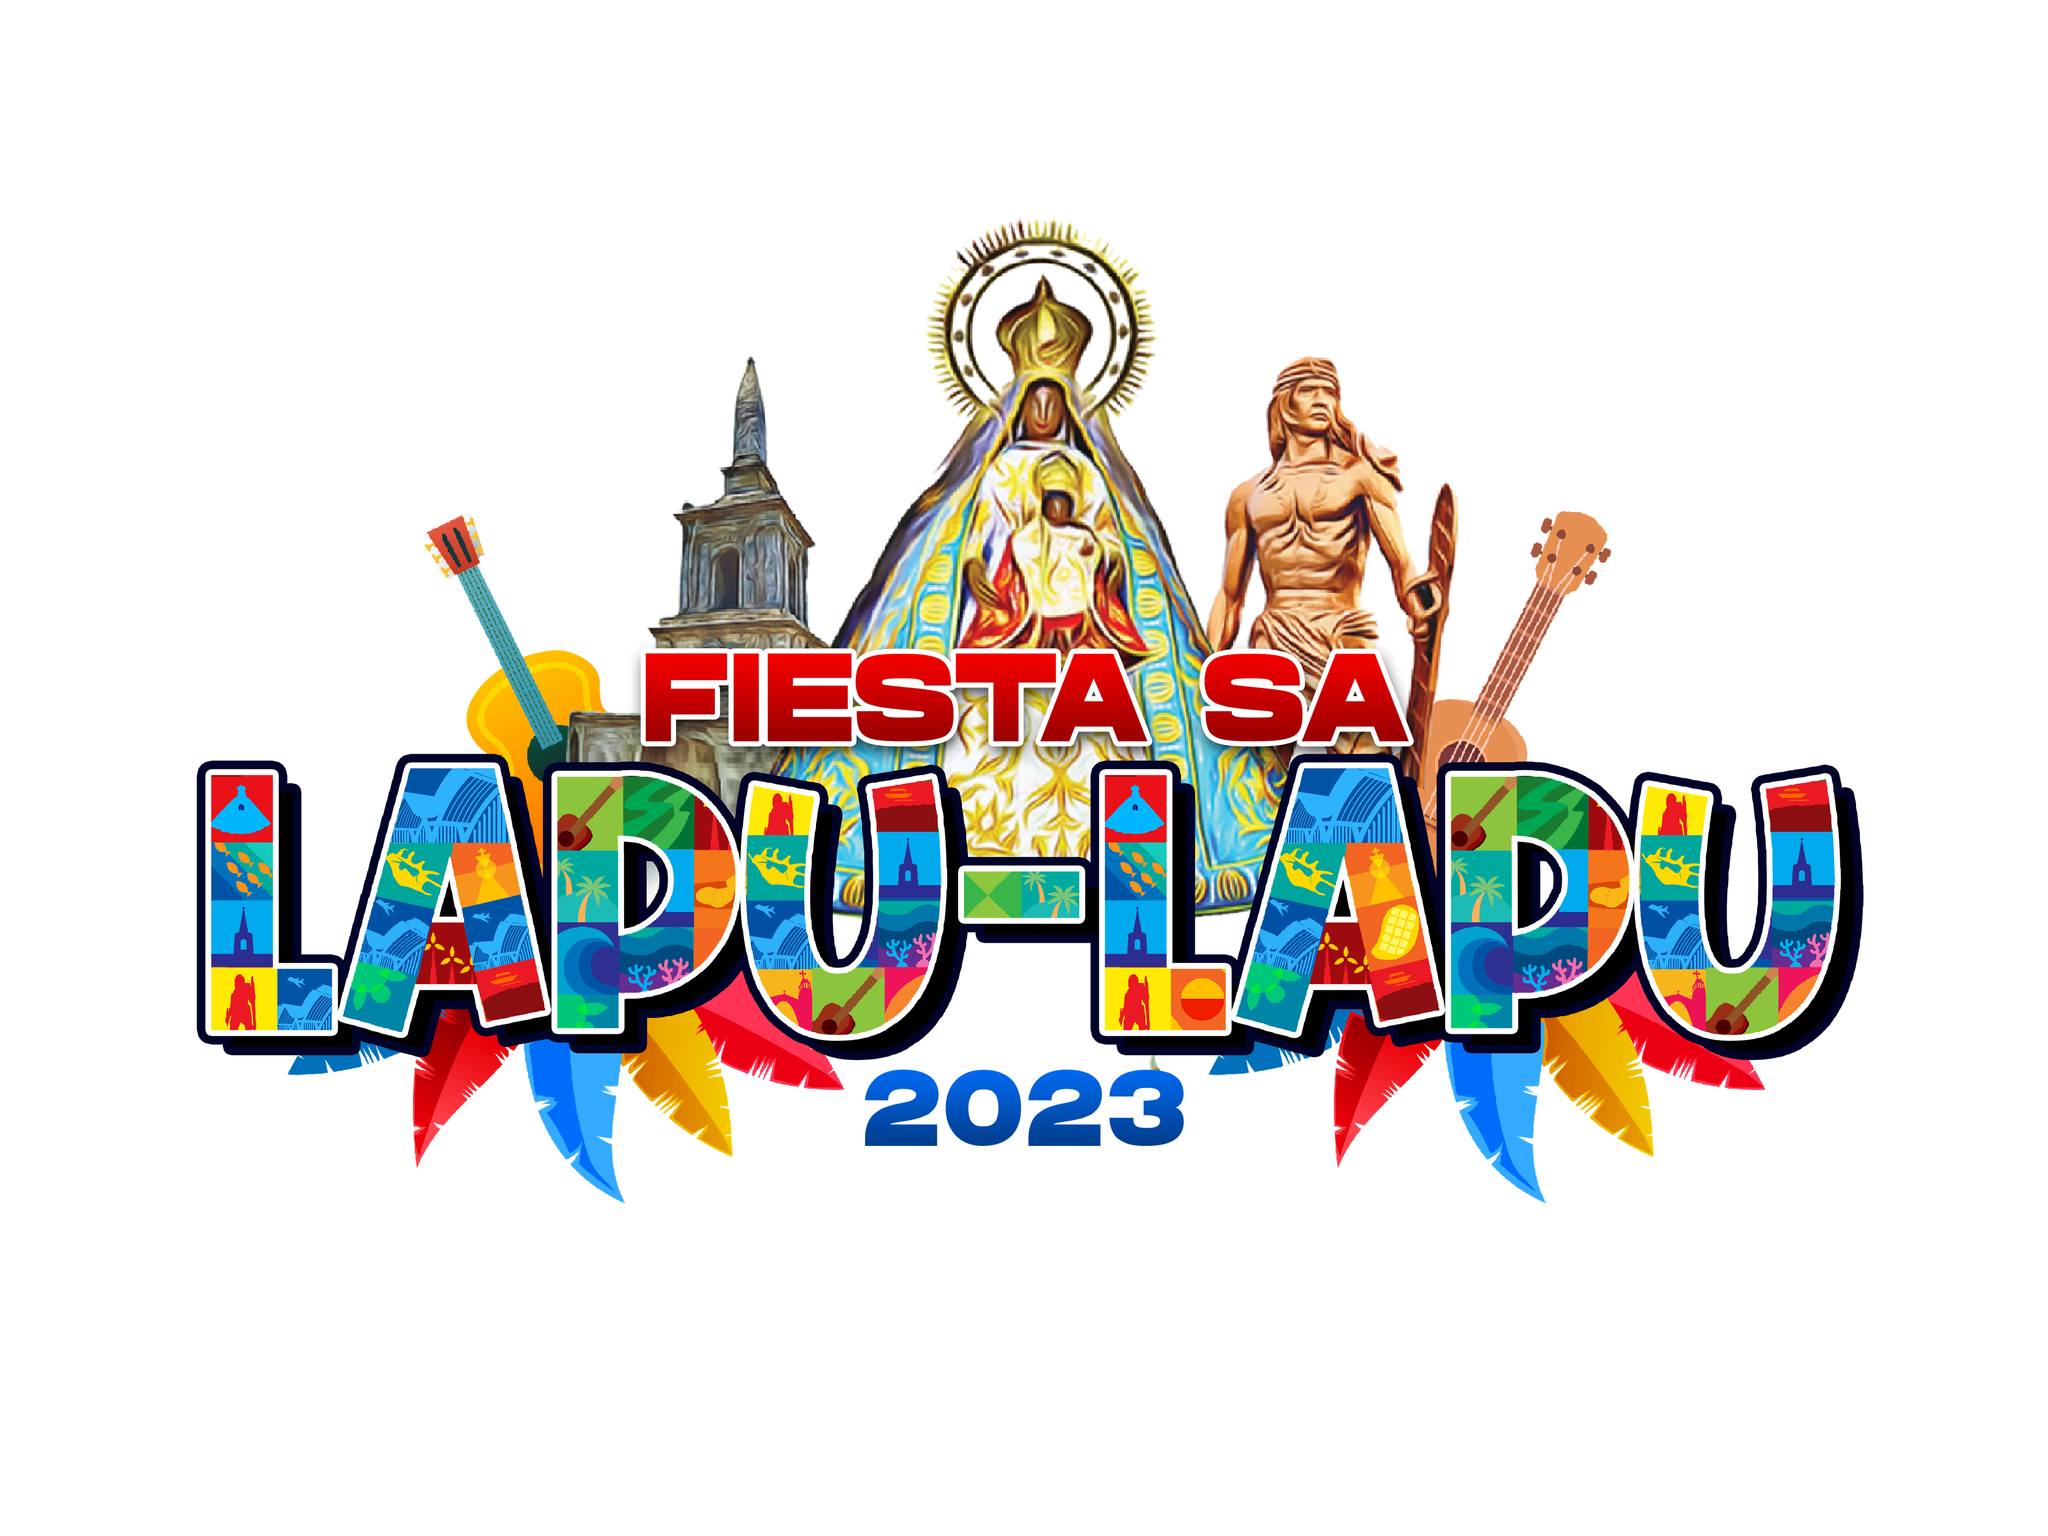 Image Posted for FIESTA SA LAPU-LAPU 2023!